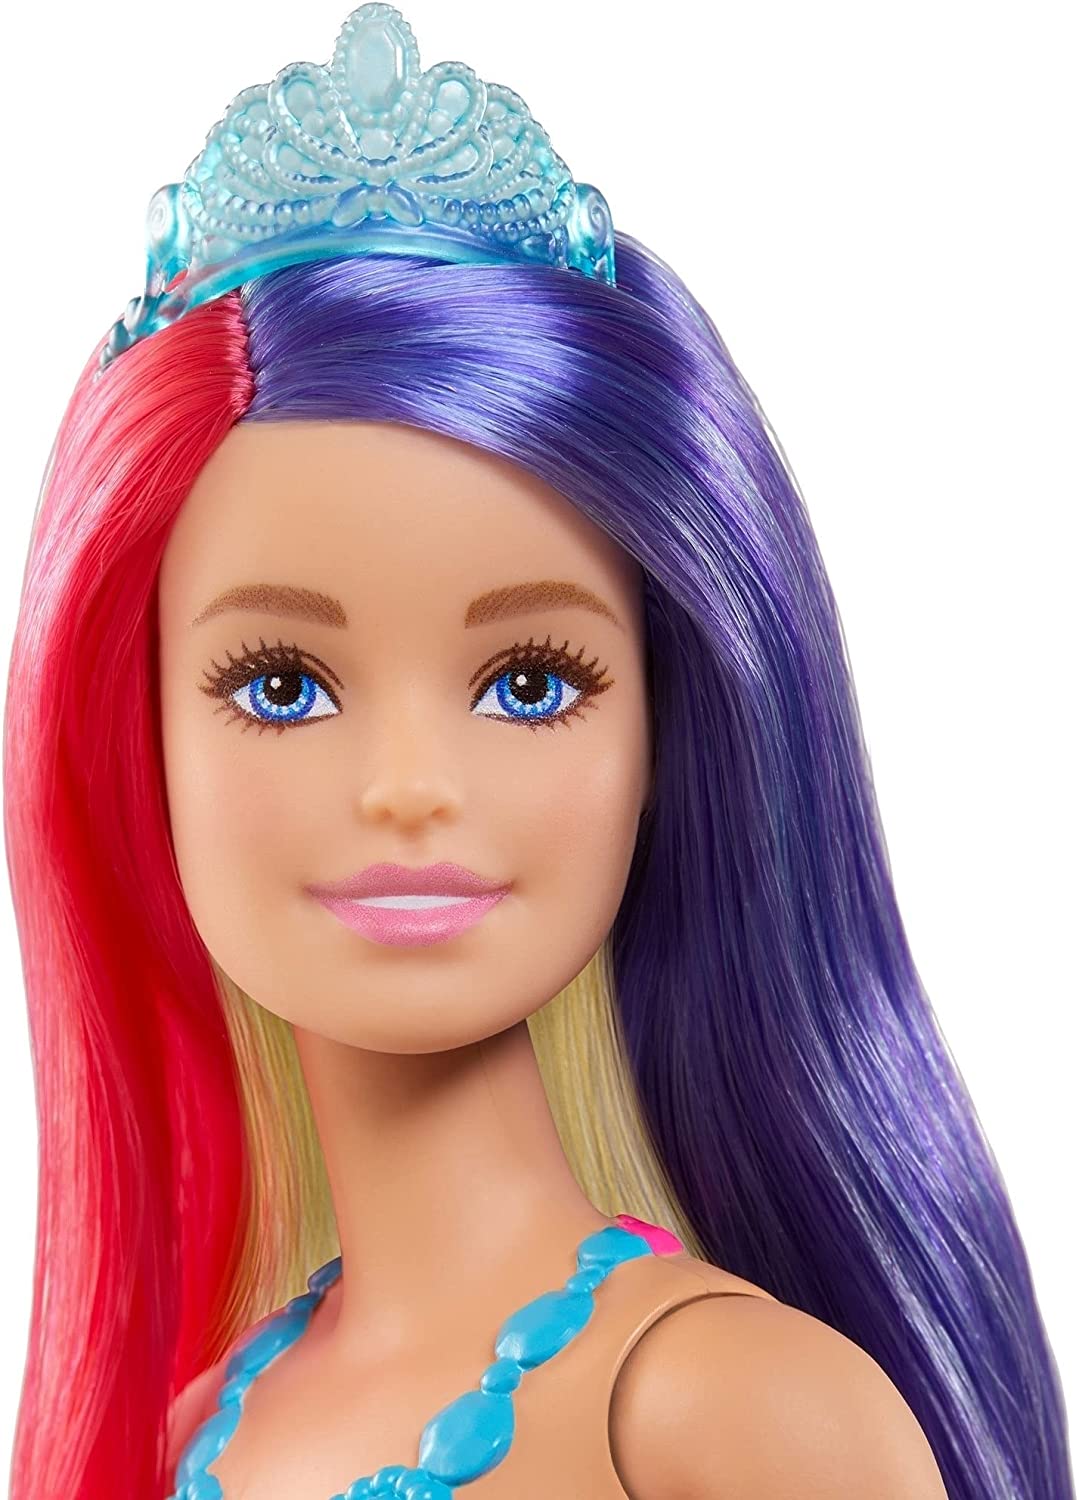 Dreamtopia Princess Doll | Barbie